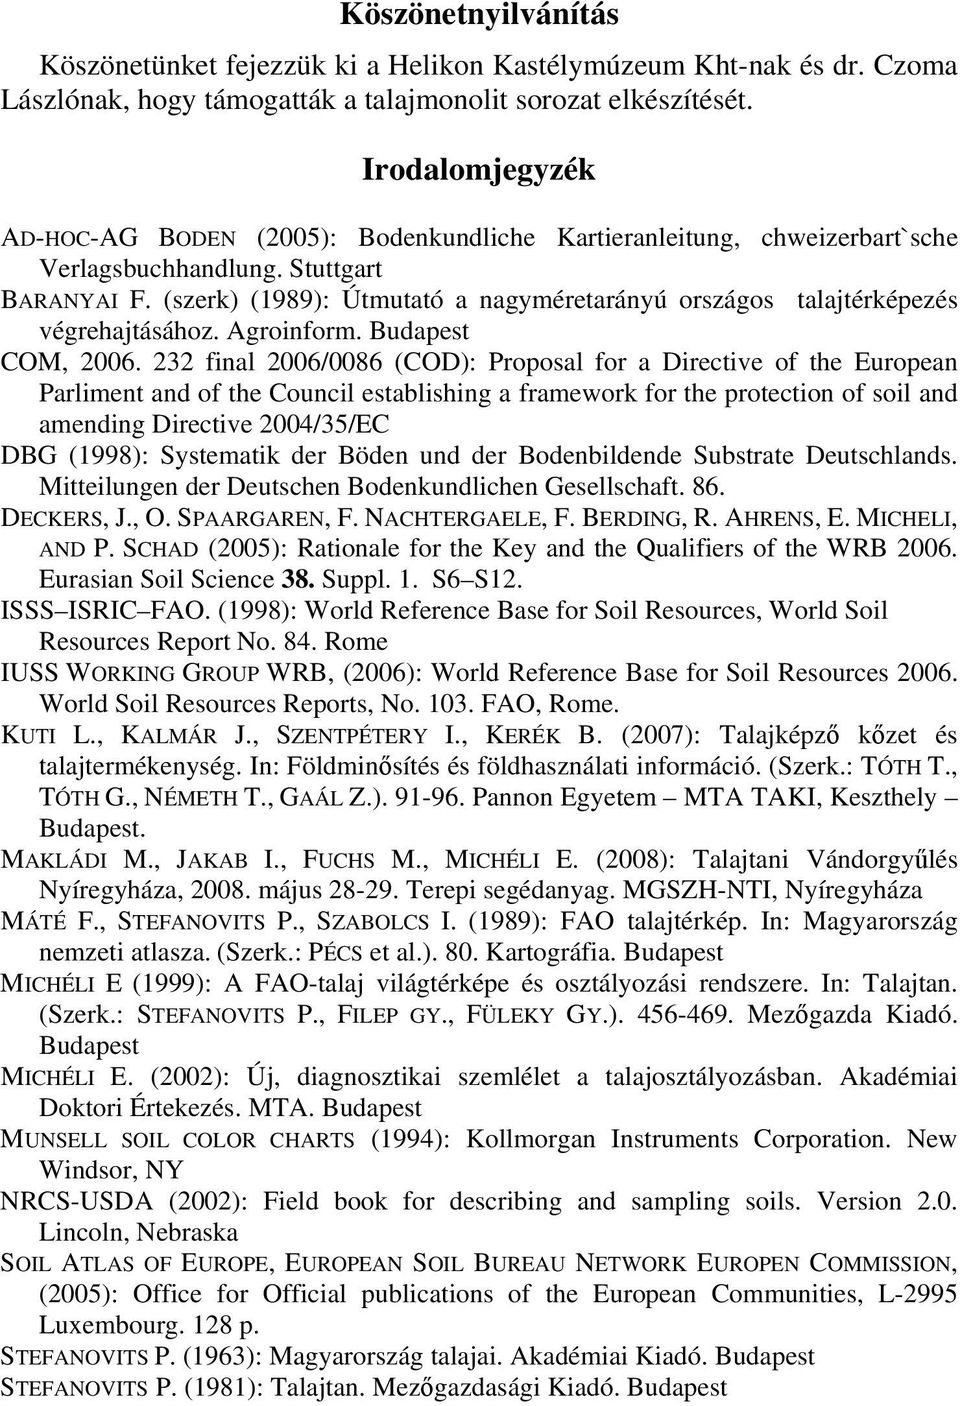 (szerk) (1989): Útmutató a nagyméretarányú országos talajtérképezés végrehajtásához. Agroinform. Budapest COM, 2006.